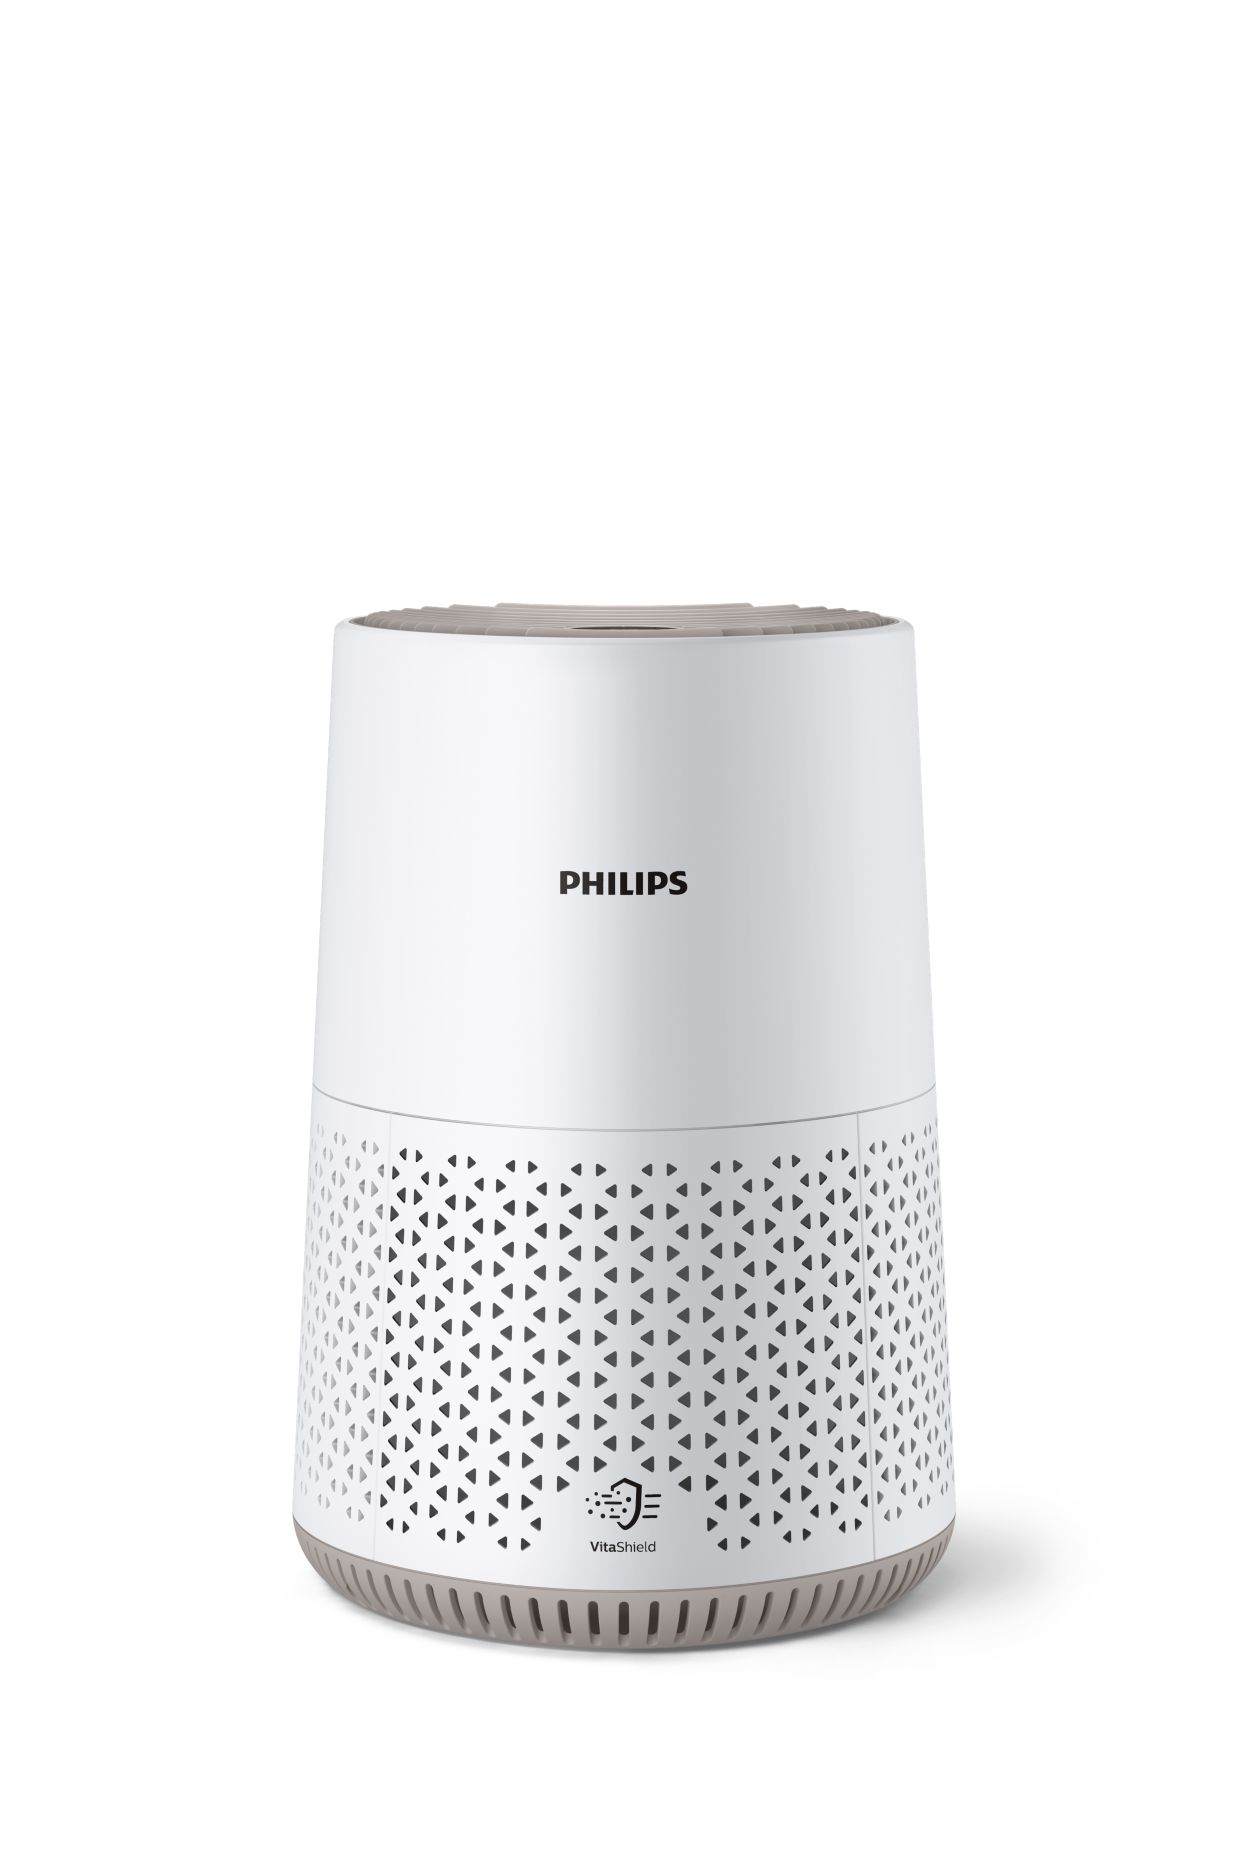 Purificateur d'air Philips 600. Ultra silencieux et économe en énergie.  filtre HEPA élimine 99,97 % des polluants Jusqu'à 44m2 (AC0650/10) –